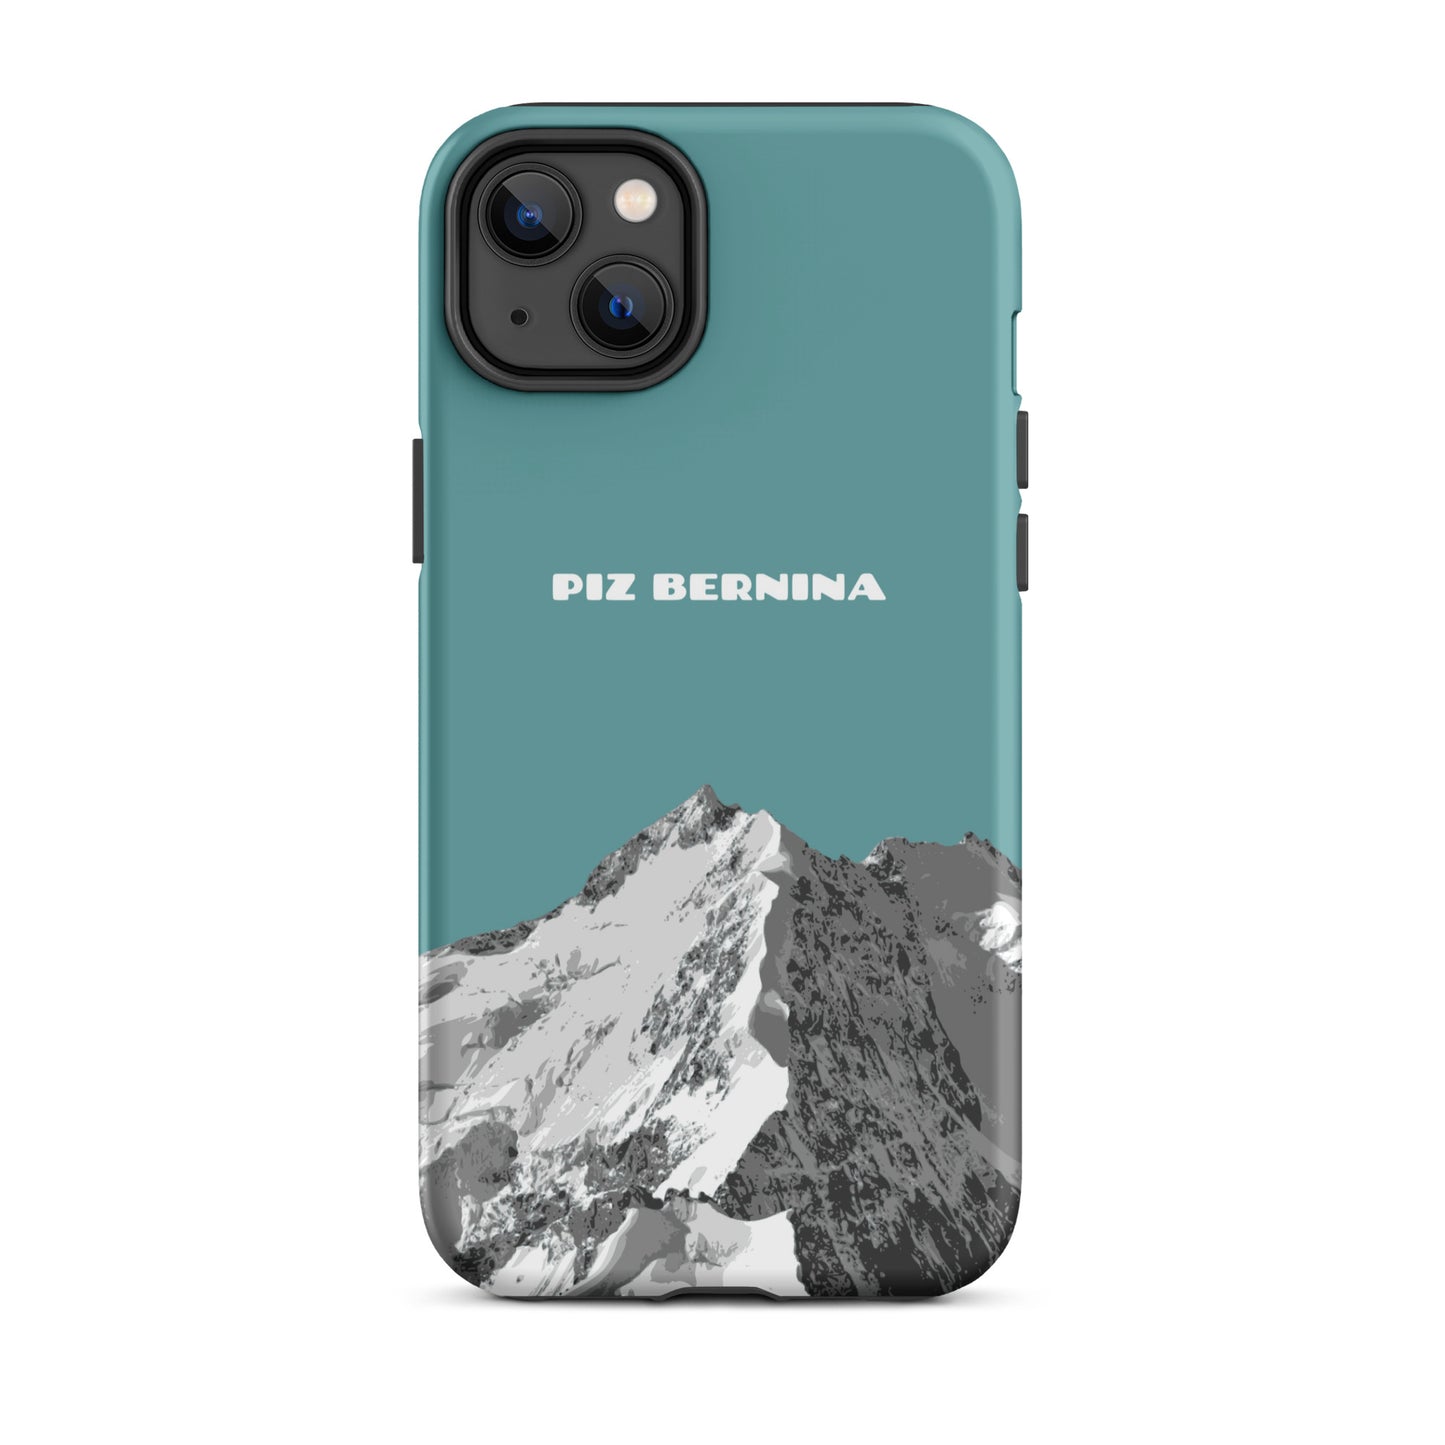 Hülle für das iPhone 14 Plus von Apple in der Farbe Kadettenblau, dass den Piz Bernina in Graubünden zeigt.